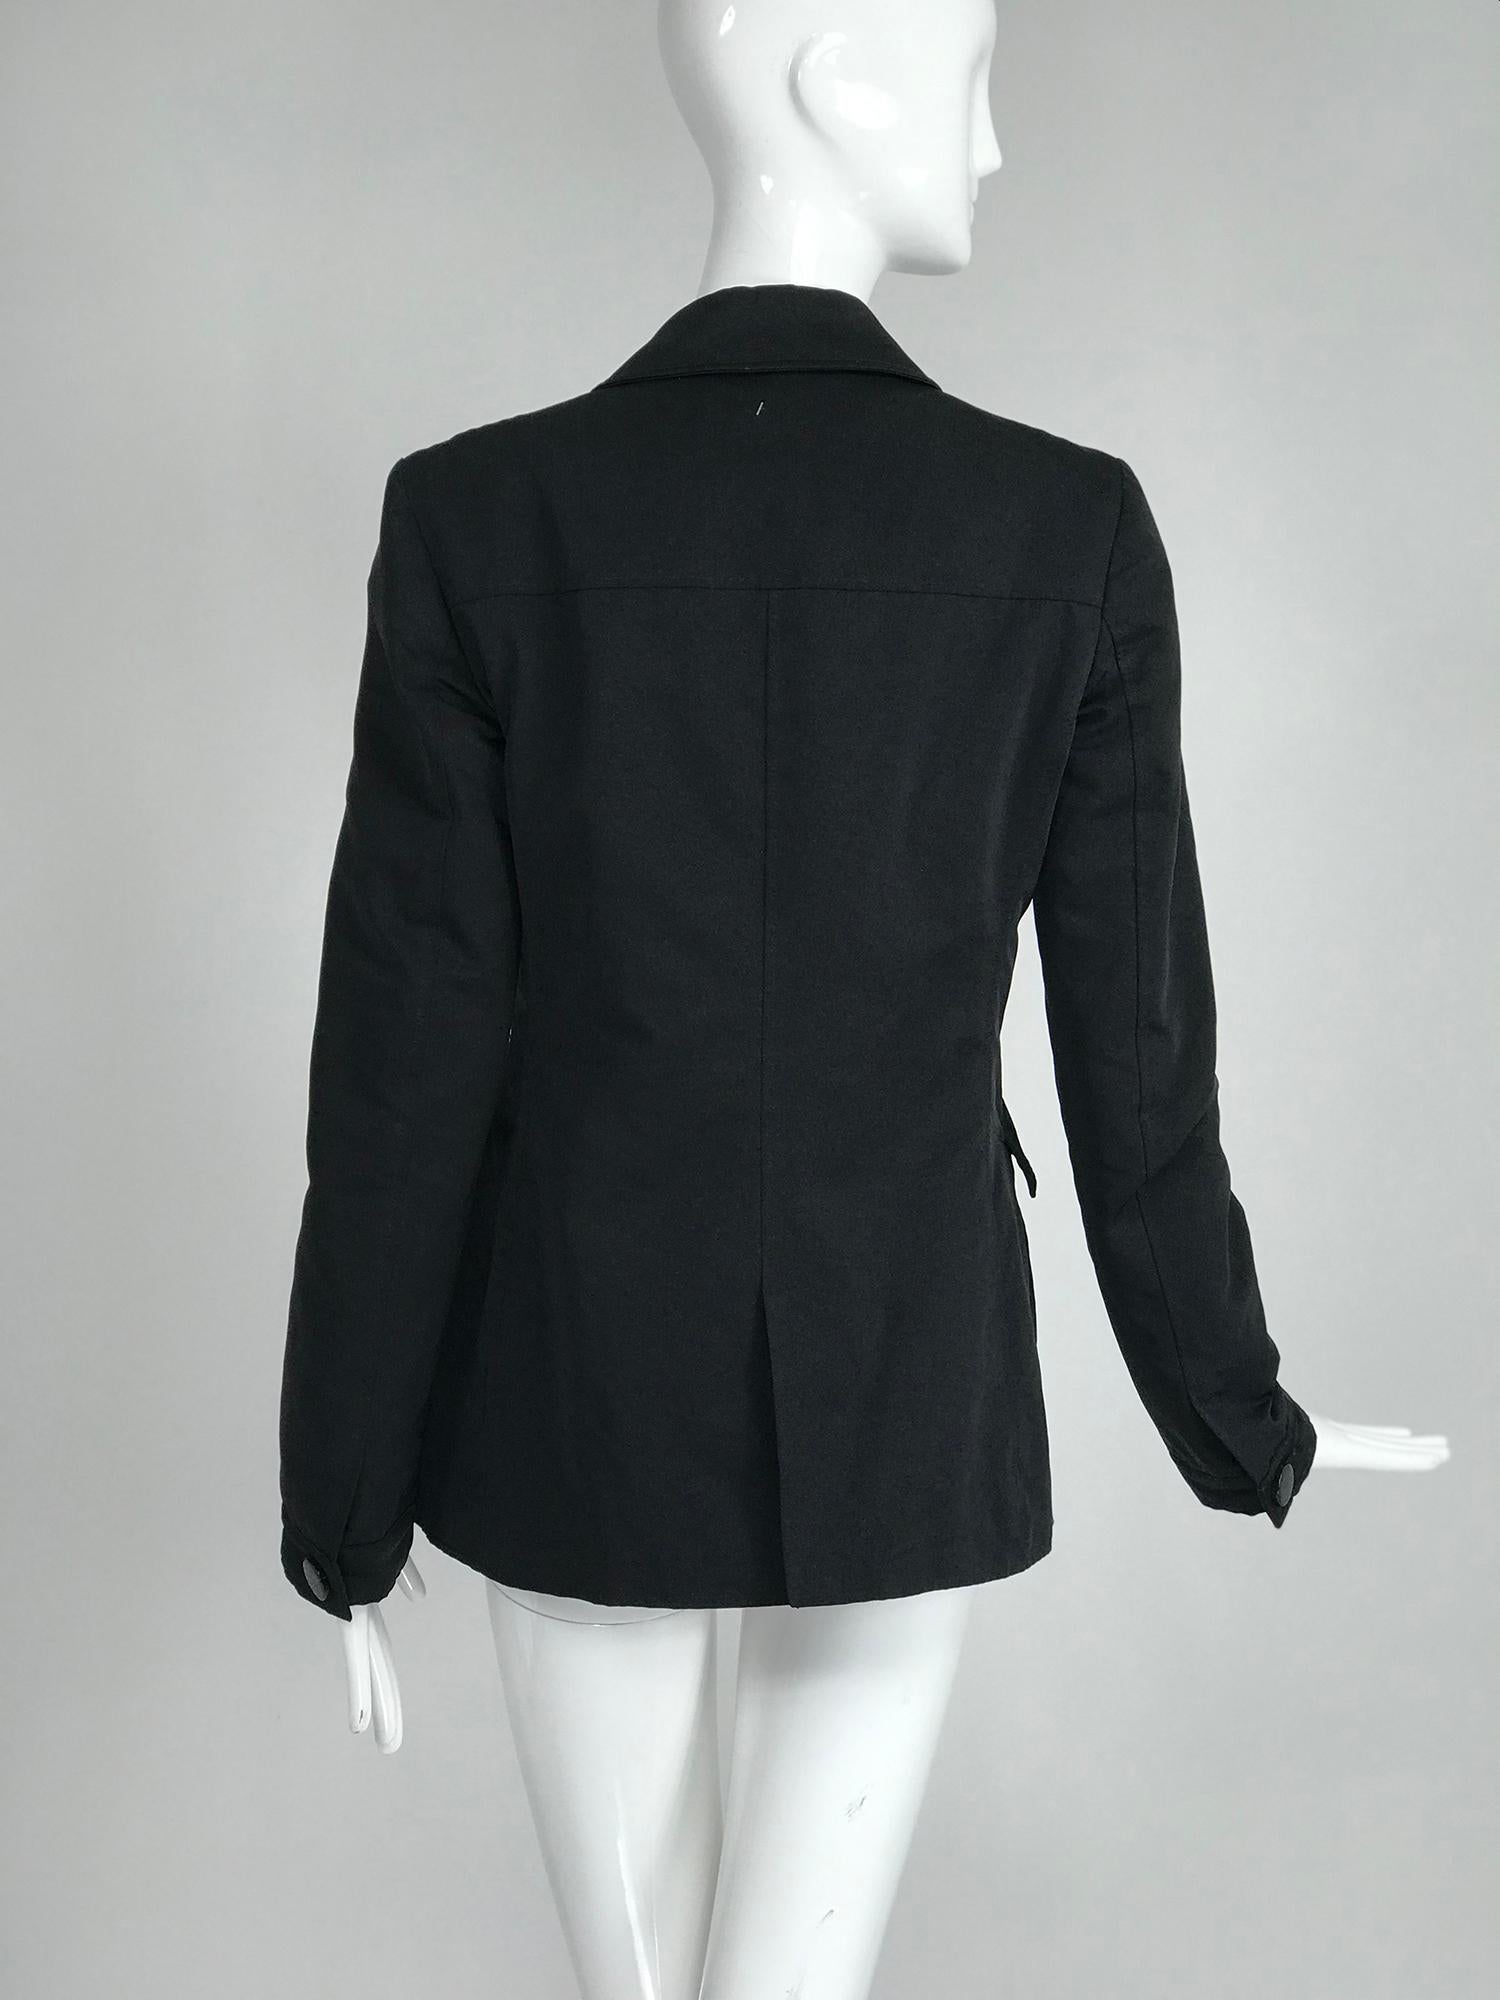 Women's Giorgio Armani Collezioni Black Nylon Single Breasted Riding Jacket